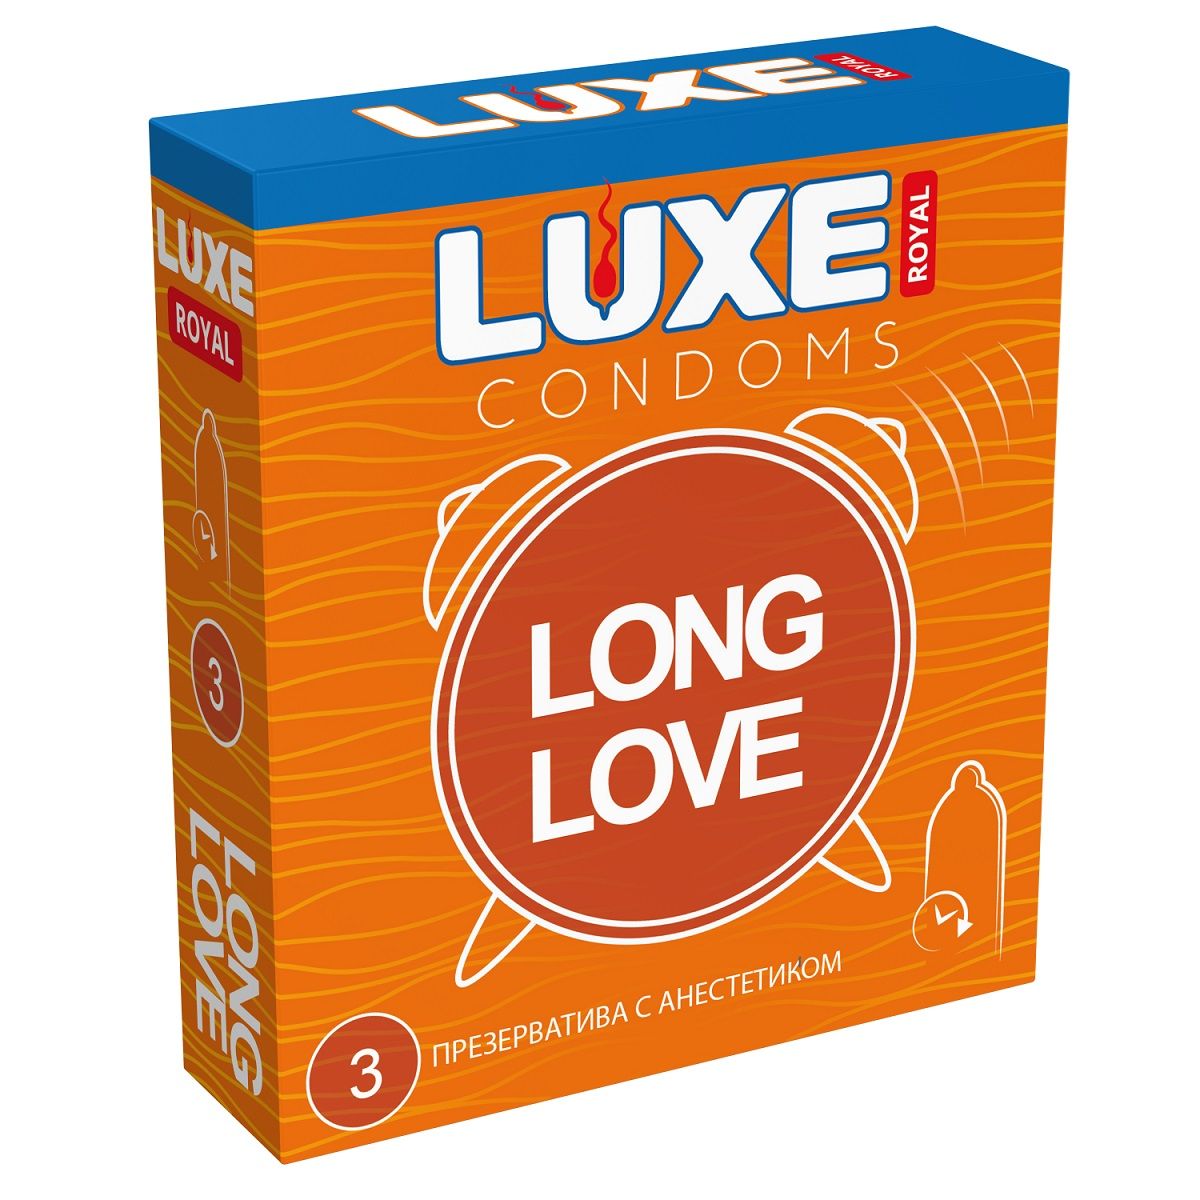 Купить Презервативы с продлевающим эффектом LUXE Royal Long Love - 3 шт. в Москве.